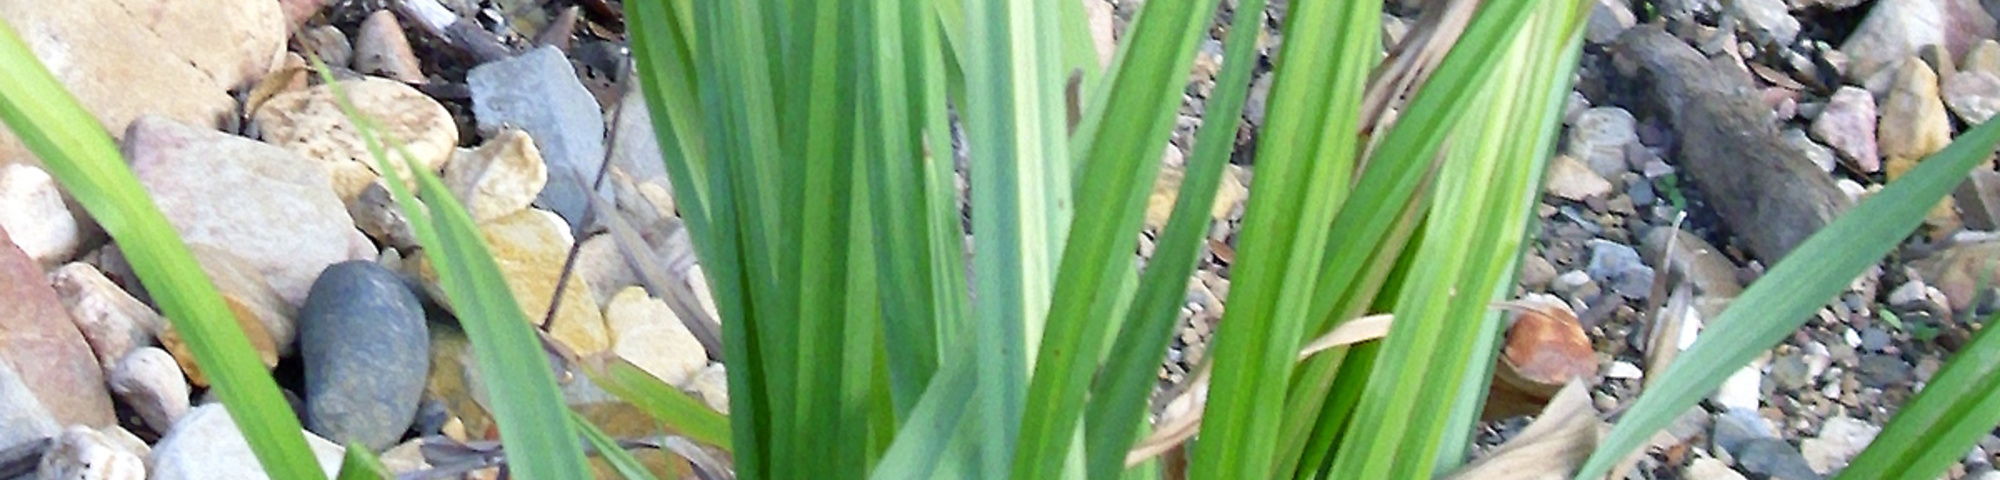 Carex pendula